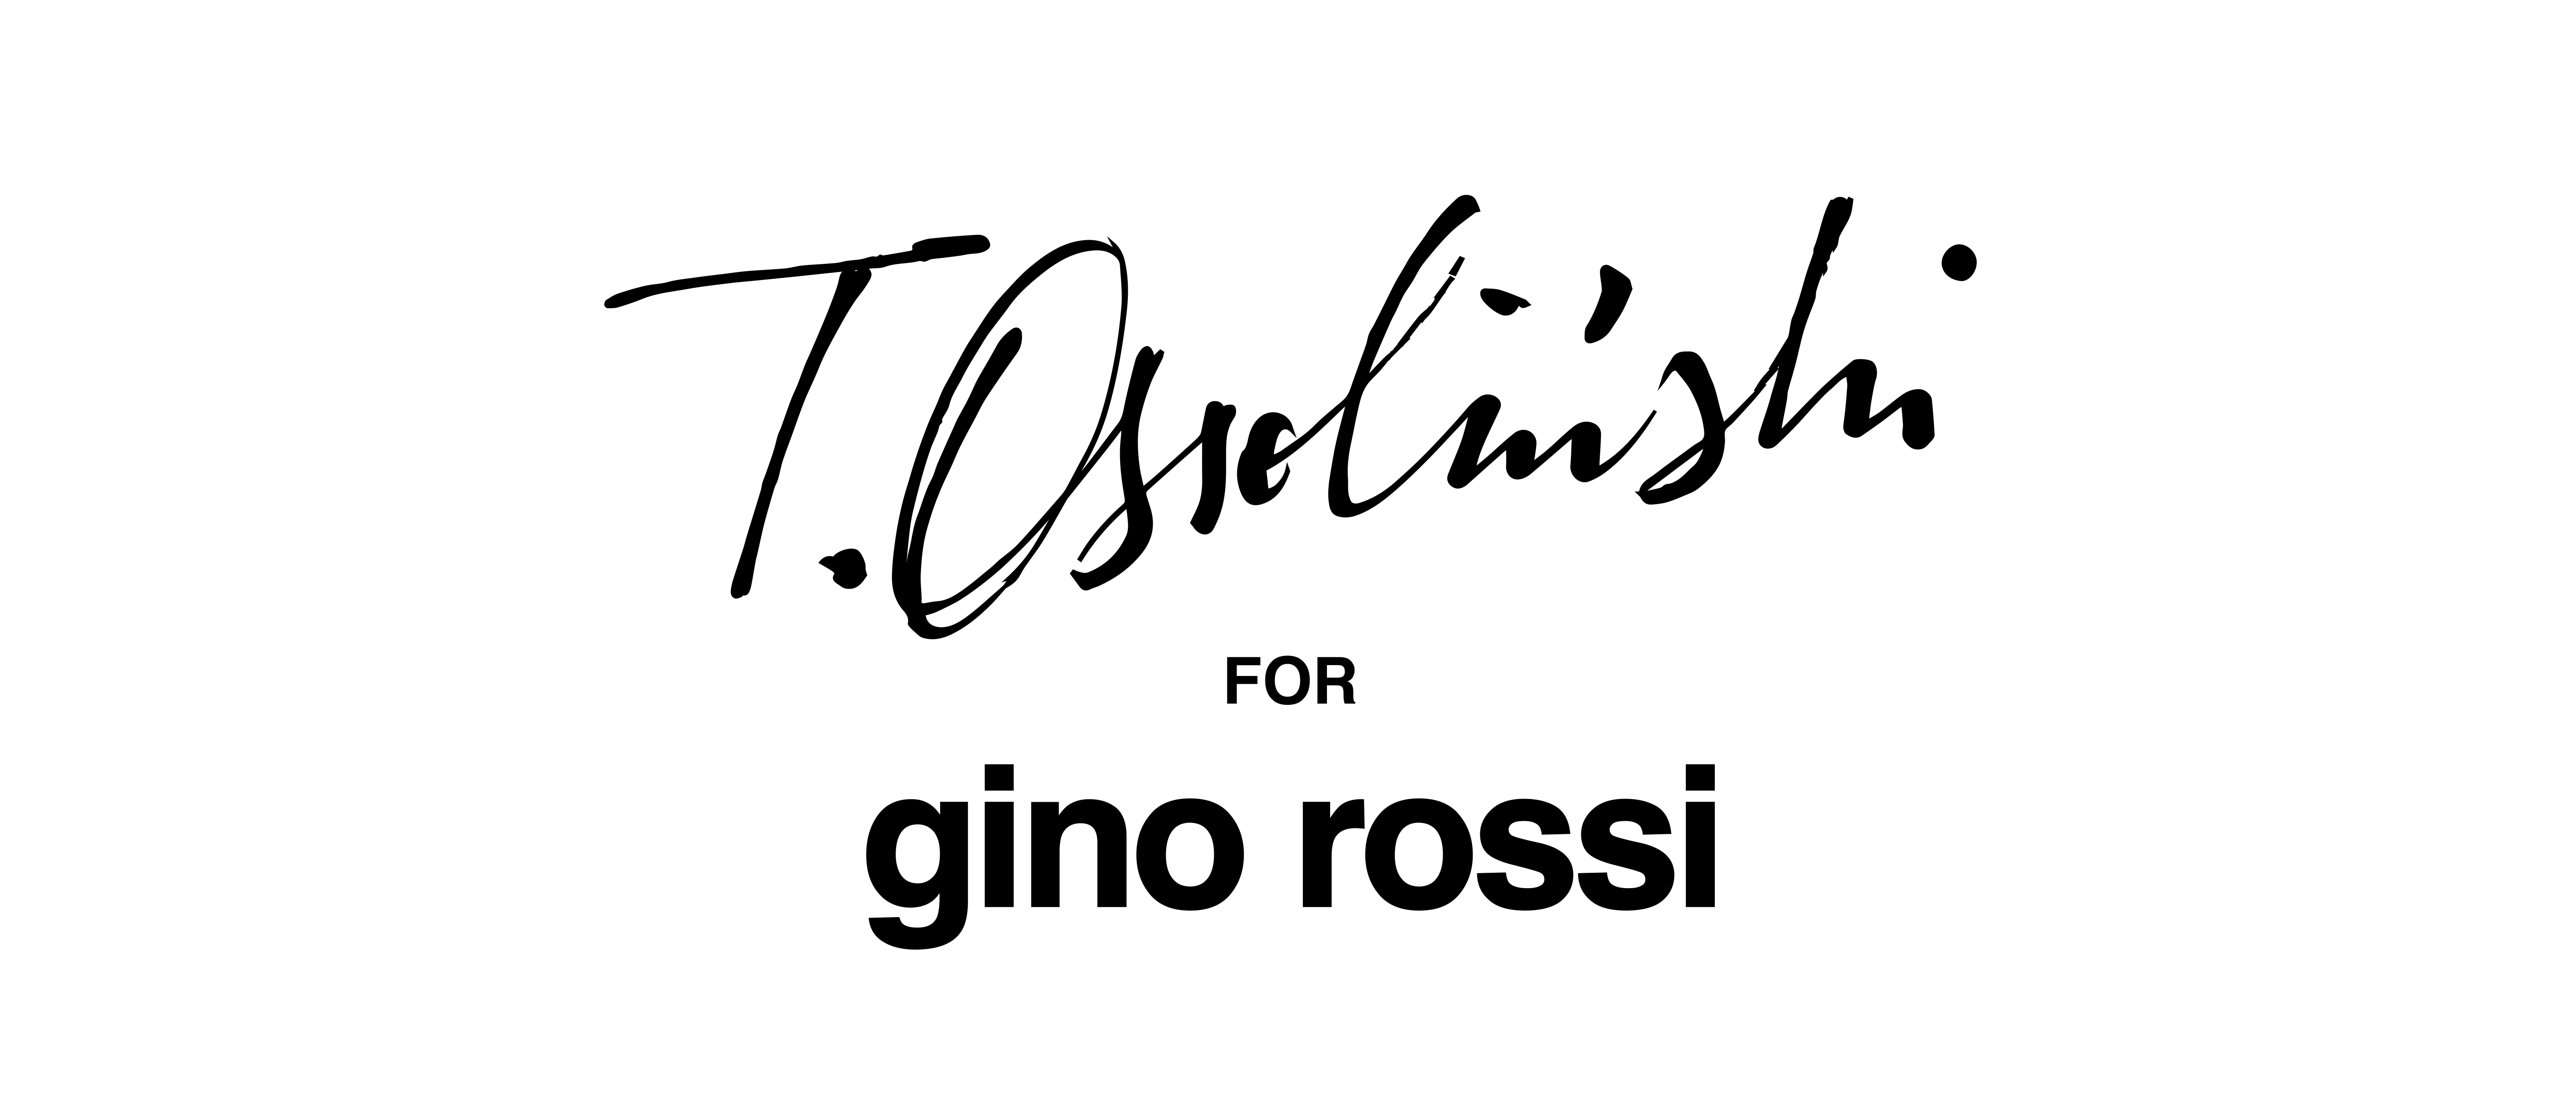 T. Ossoliński for gino rossi